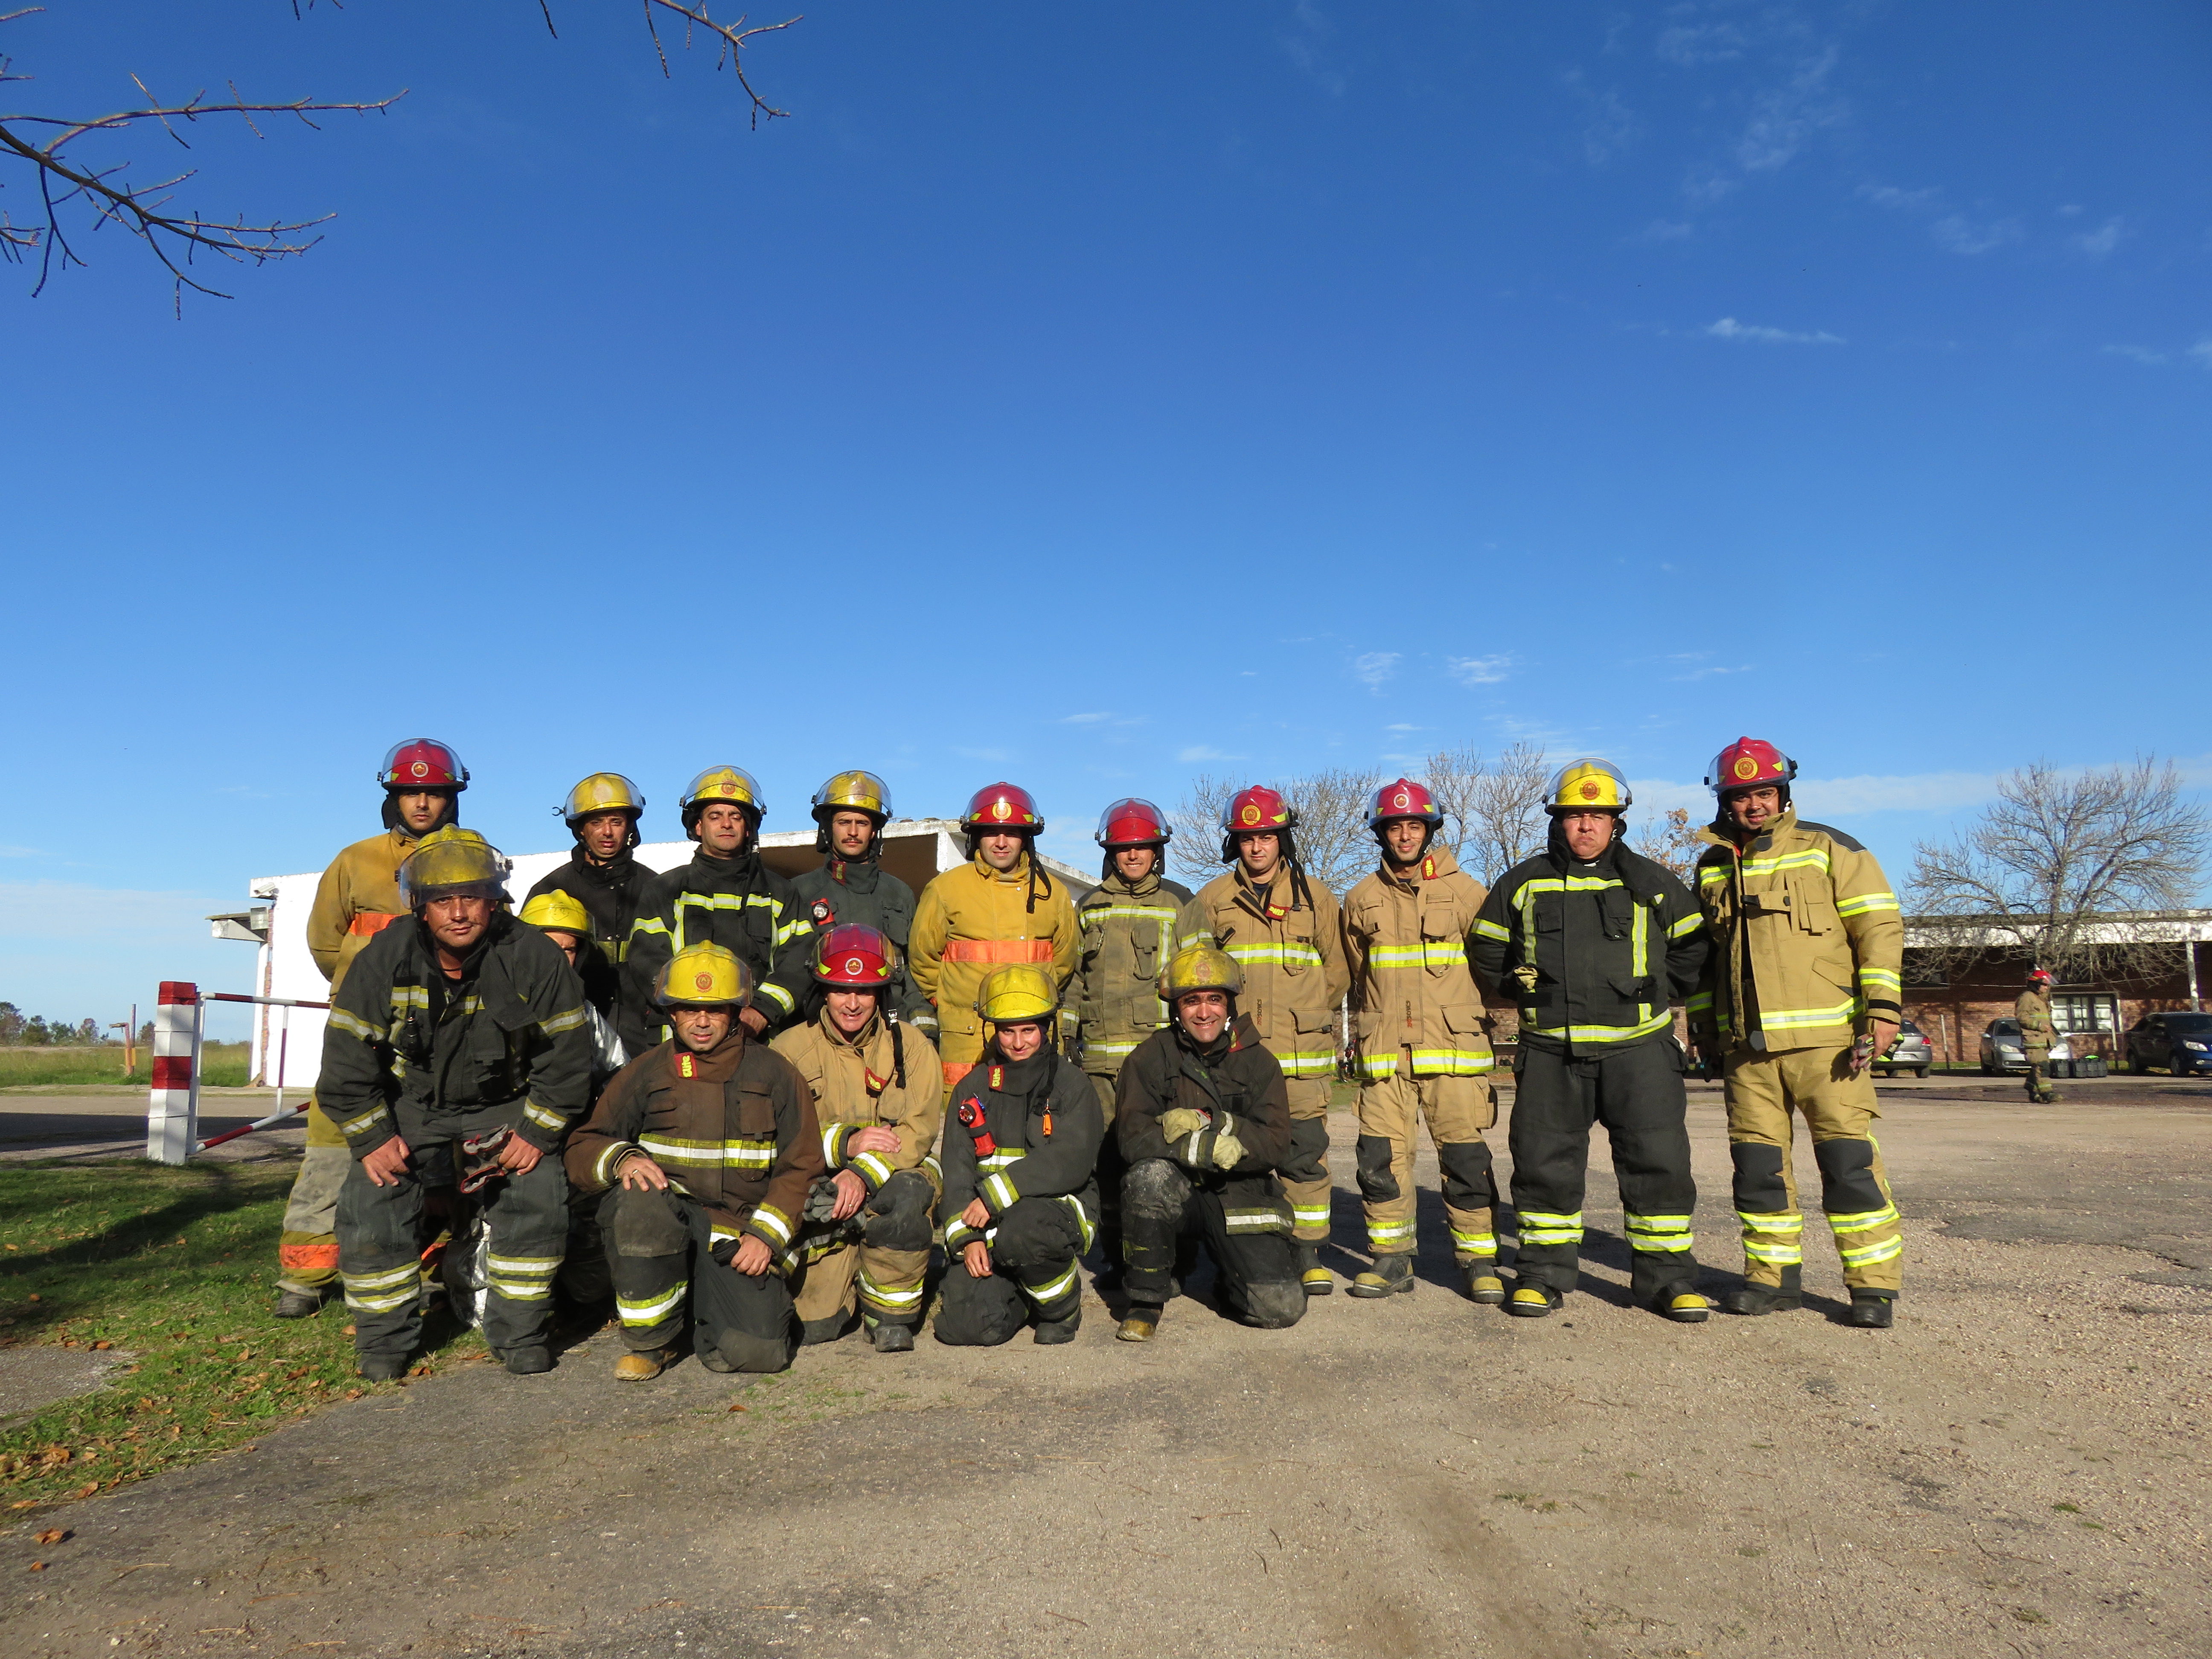 IMG_20230511_3922-bm8gsWjO.jpg - El pasado jueves 11 de mayo culminó la &#034;Capacitación para bomberos sobre manejo de incidentes relacionados con la movilidad eléctrica&#034; en donde se capacitaron a 25 bomberos en la Base Aérea de Santa Bernardina del departamento de Durazno. Esta capacitación es la continuación del primer curso regional que organizó la plataforma MOVE del Programa de la Naciones Unidas para el Medio Ambiente a finales de 2022 en Paraguay, donde participaron y se formaron dos bomberos instructores de Uruguay.